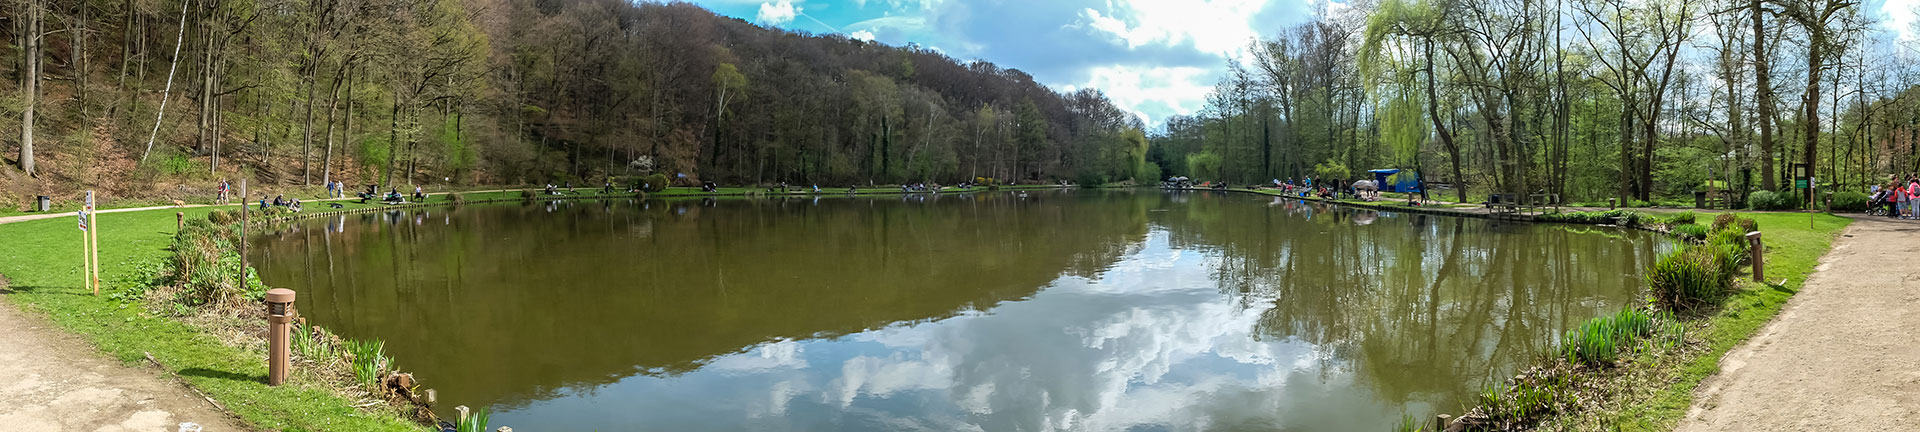 Domaine - provincial - Bois des Rêves - parc de loisirs - Ottignies